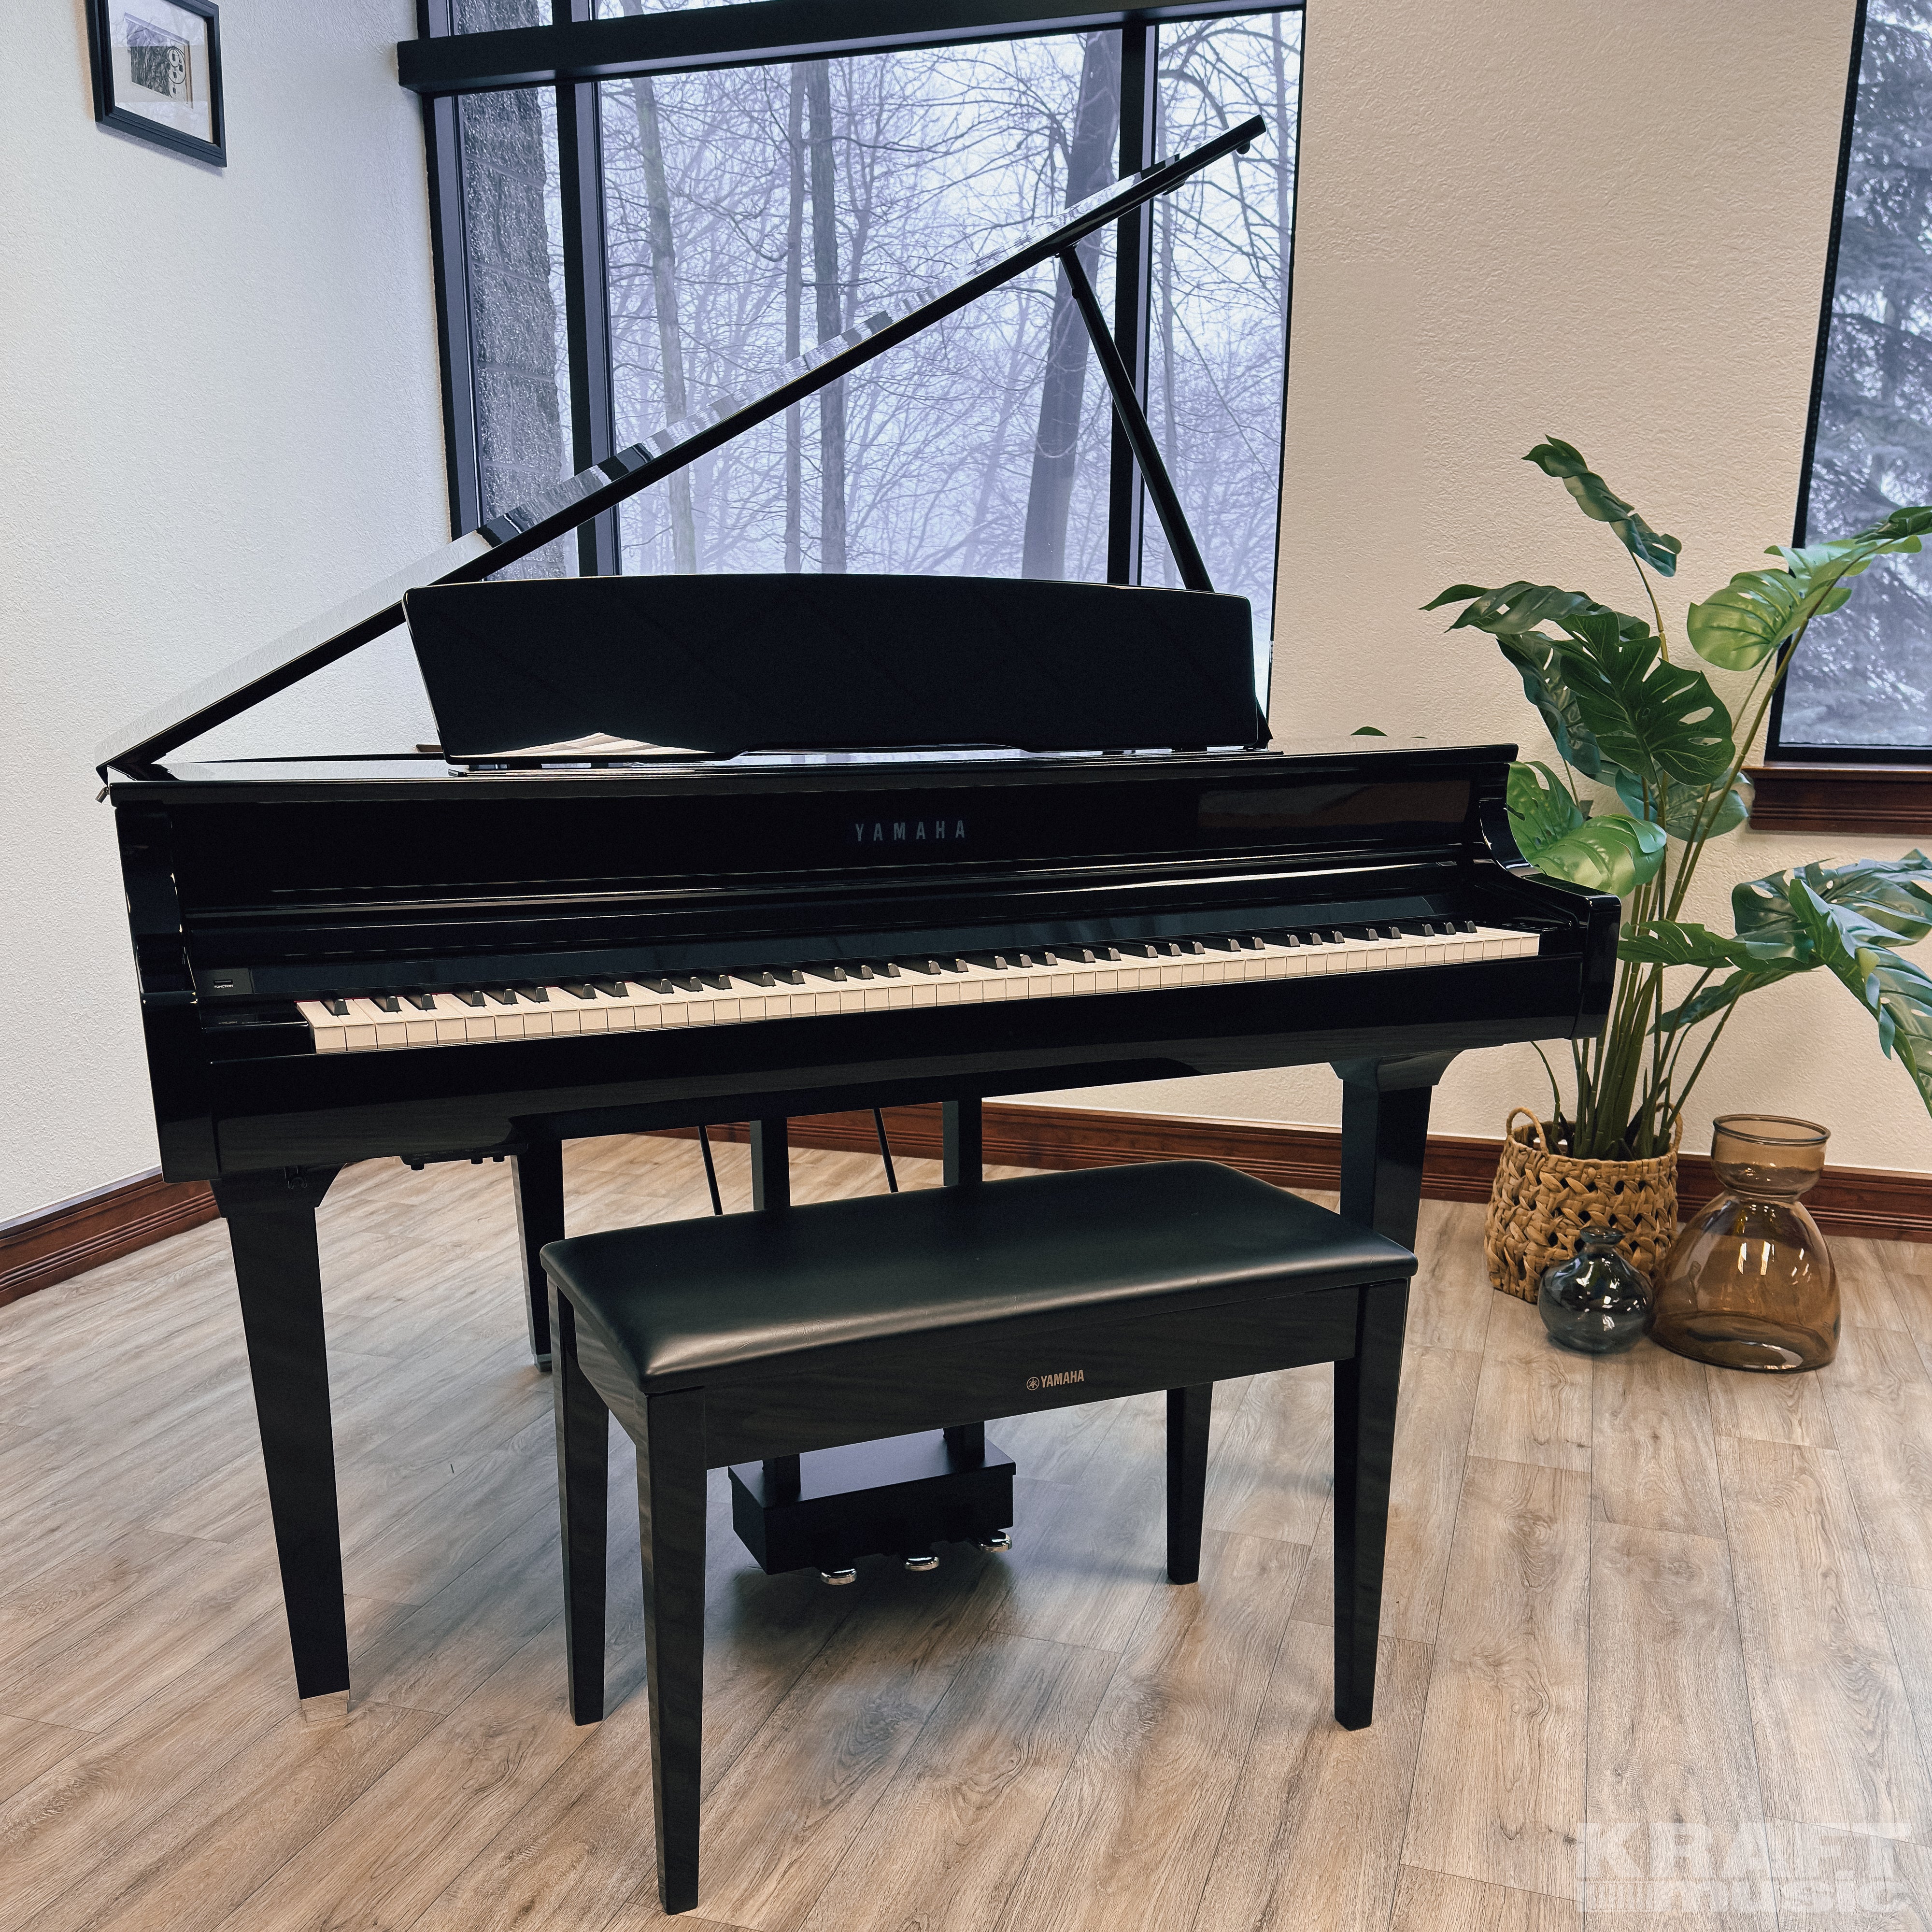 Yamaha Clavinova CSP-295GP Digital Grand Piano - Polished Ebony 